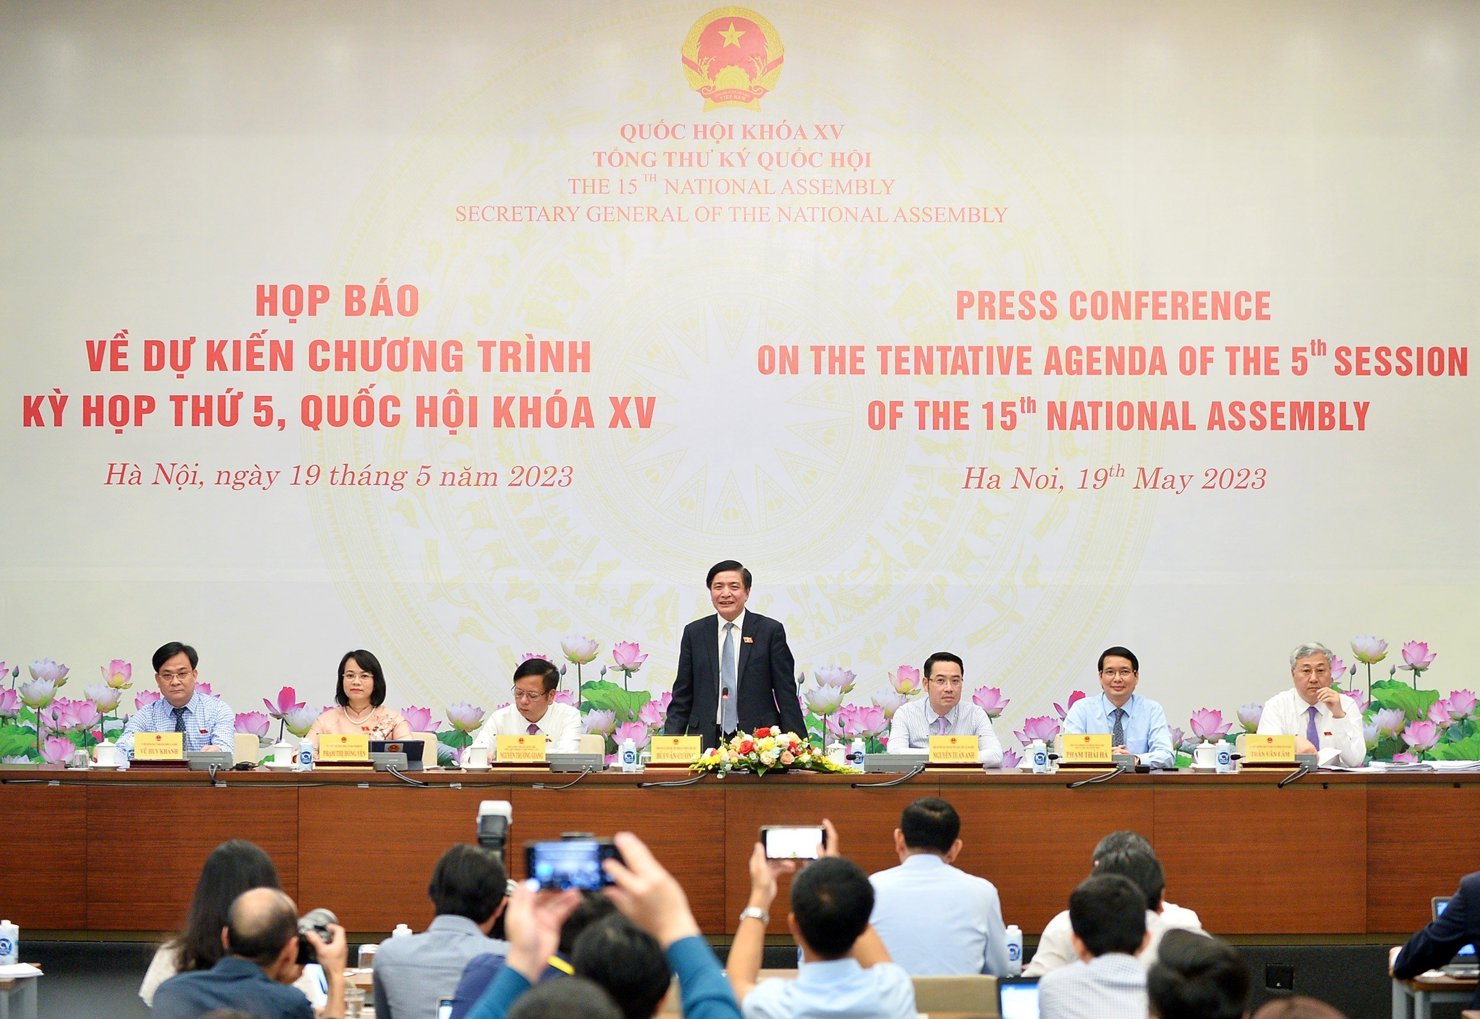 Ông Bùi Văn Cường - Ủy viên Trung ương Đảng, Chủ nhiệm Văn phòng Quốc hội, Tổng Thư ký Quốc hội chủ trì buổi họp báo.